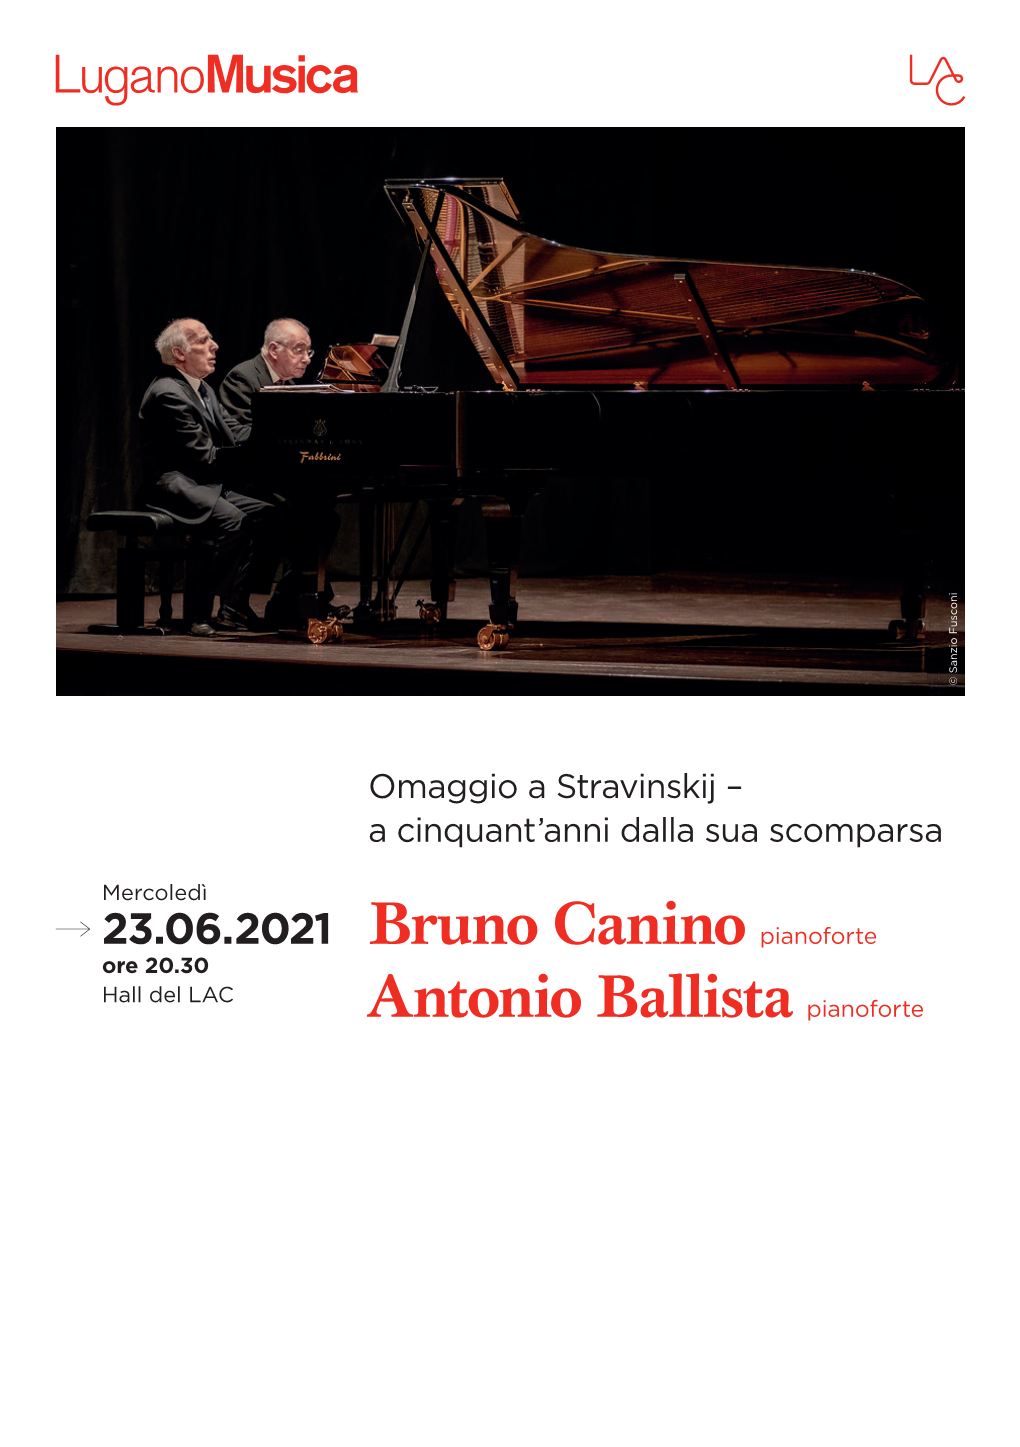 Bruno Canino Pianoforte Antonio Ballista Pianoforte